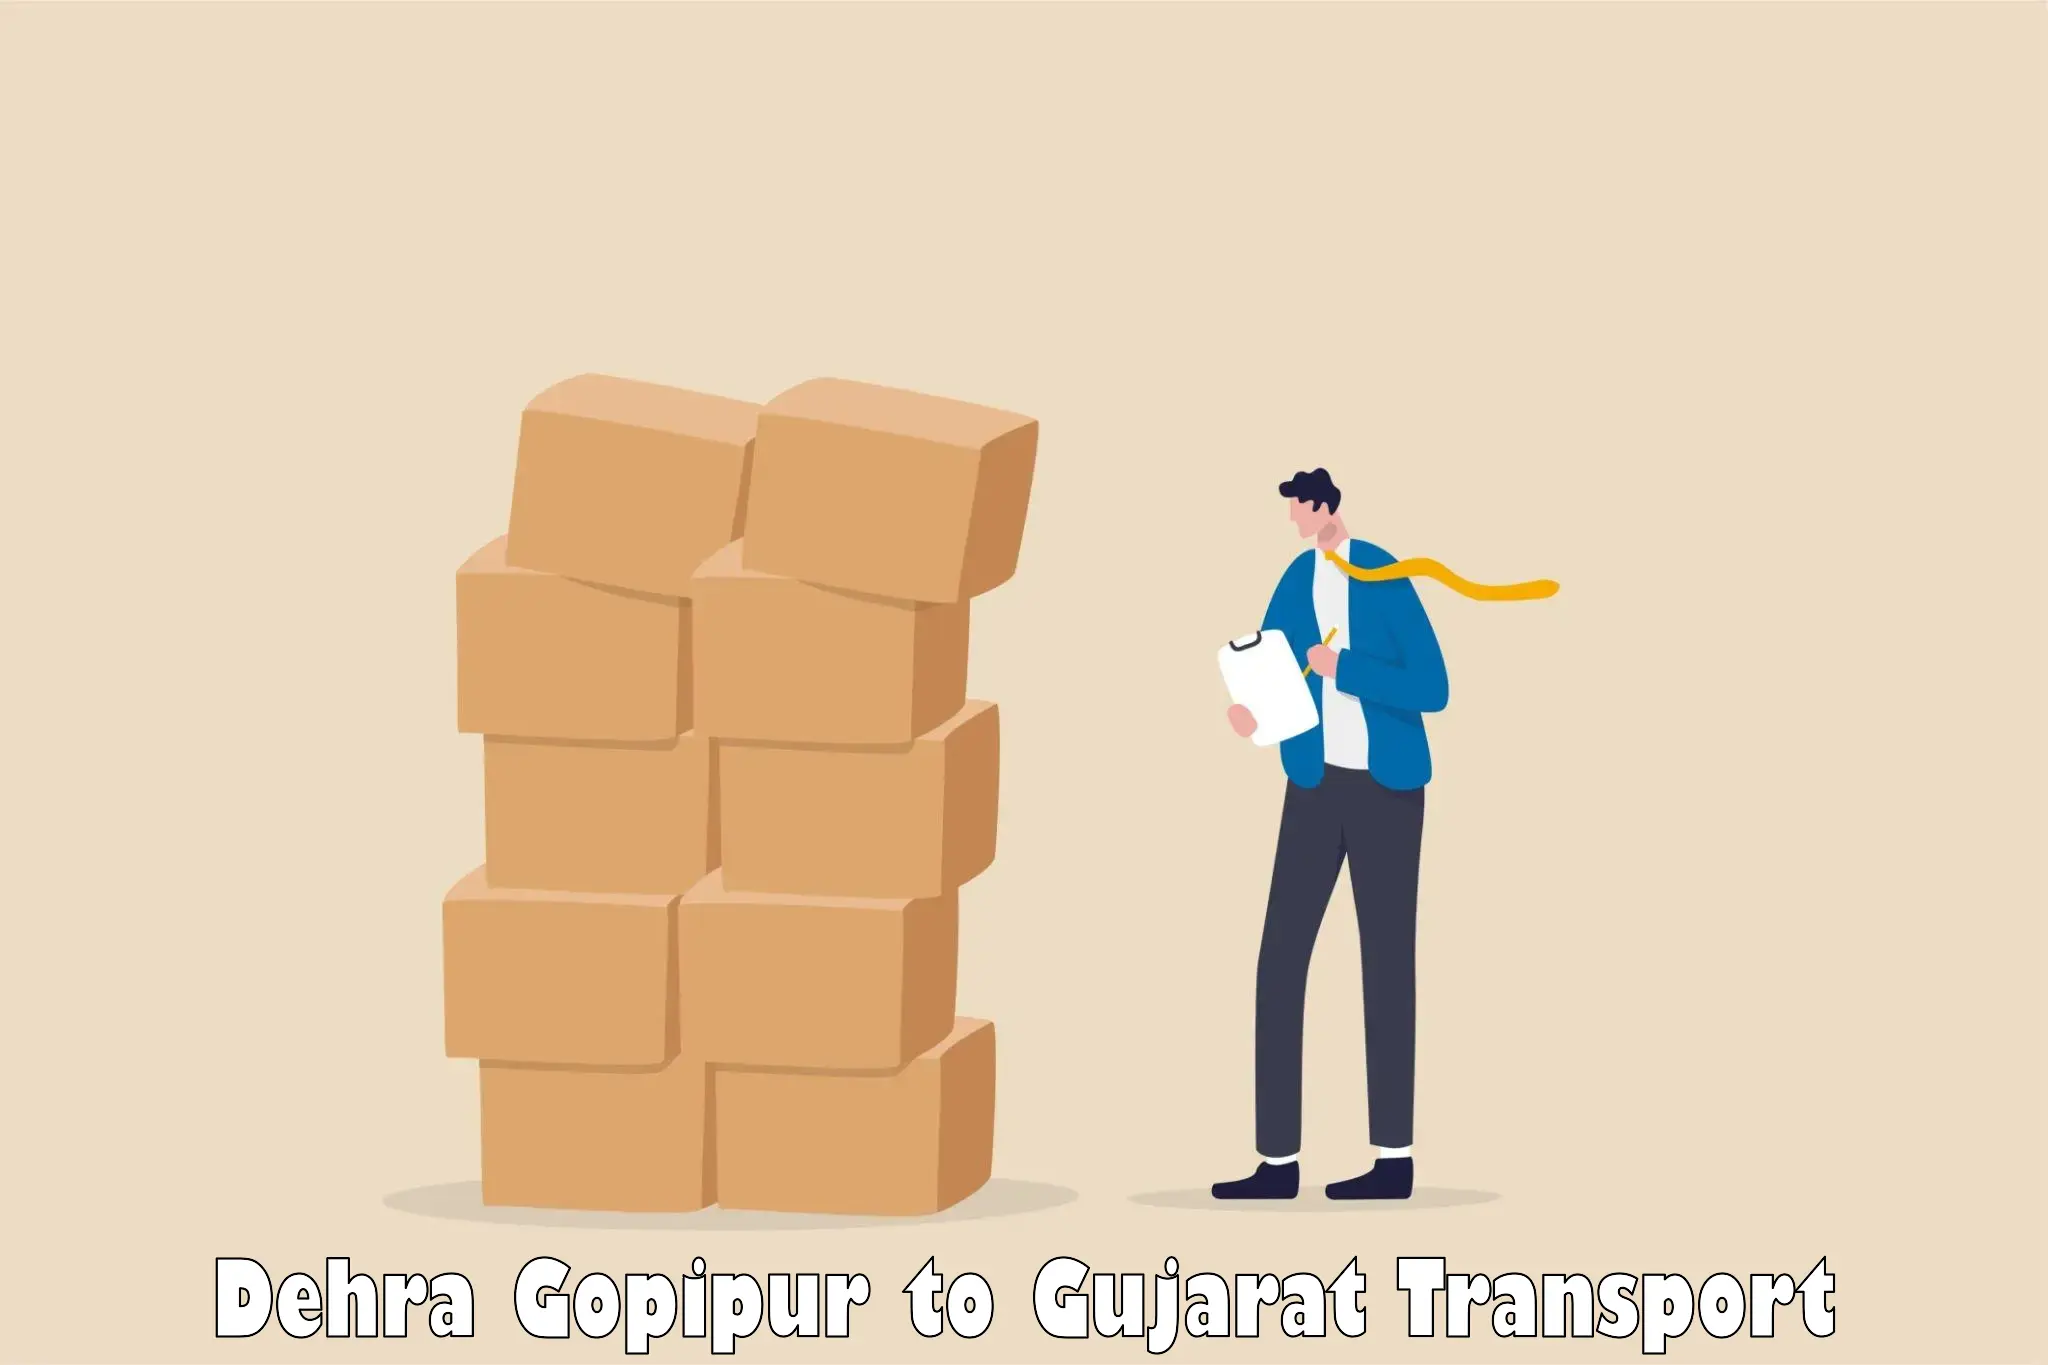 Container transport service Dehra Gopipur to Gandhinagar